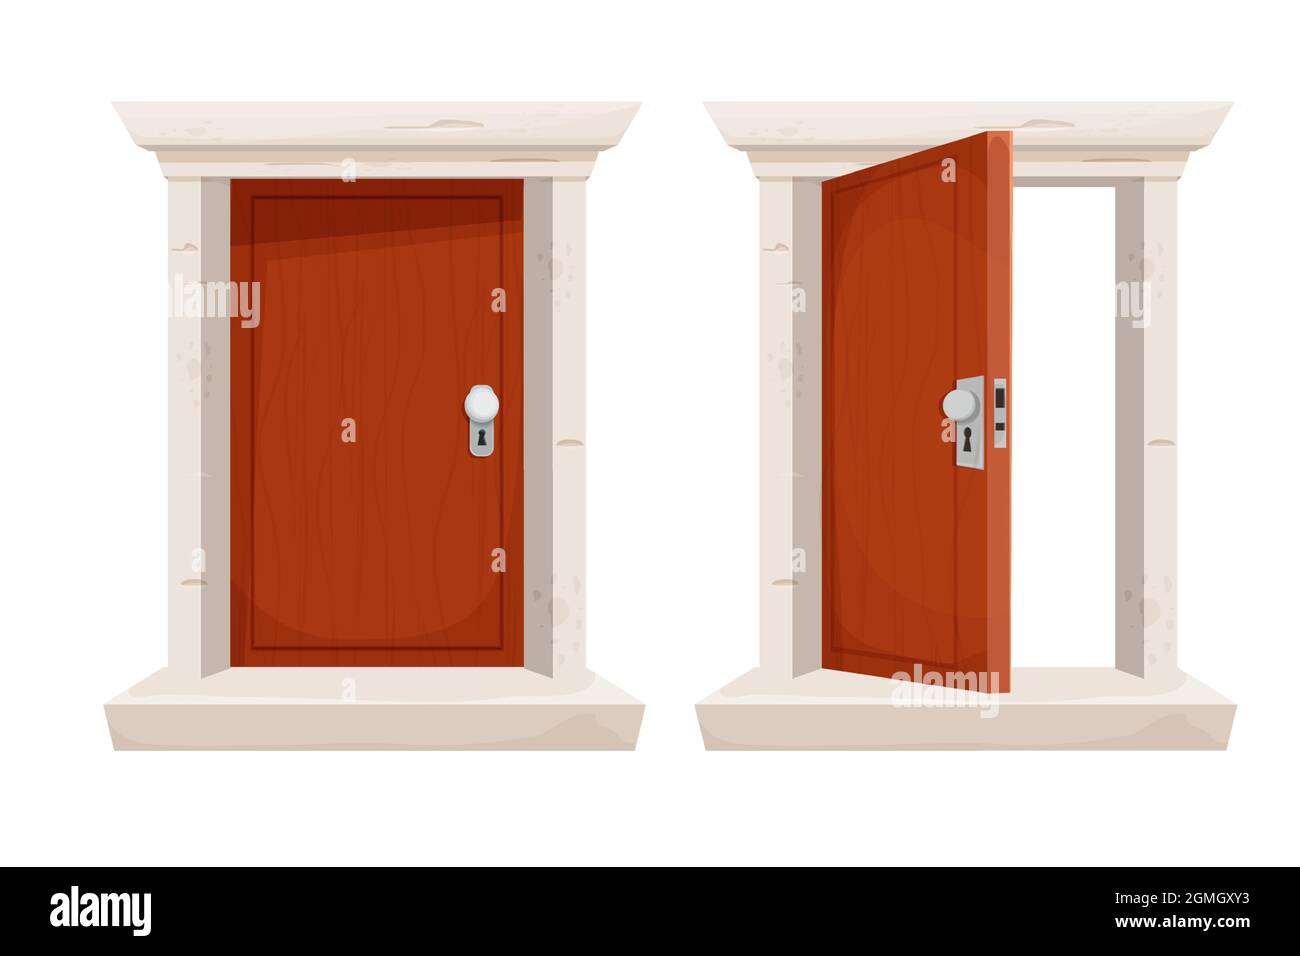 Setzen Sie Holztür offen und geschlossen in Cartoon-Stil isoliert auf weißem Hintergrund. Türrahmen aus Stein, Eingang. Spielelement. Vektorgrafik Stock Vektor